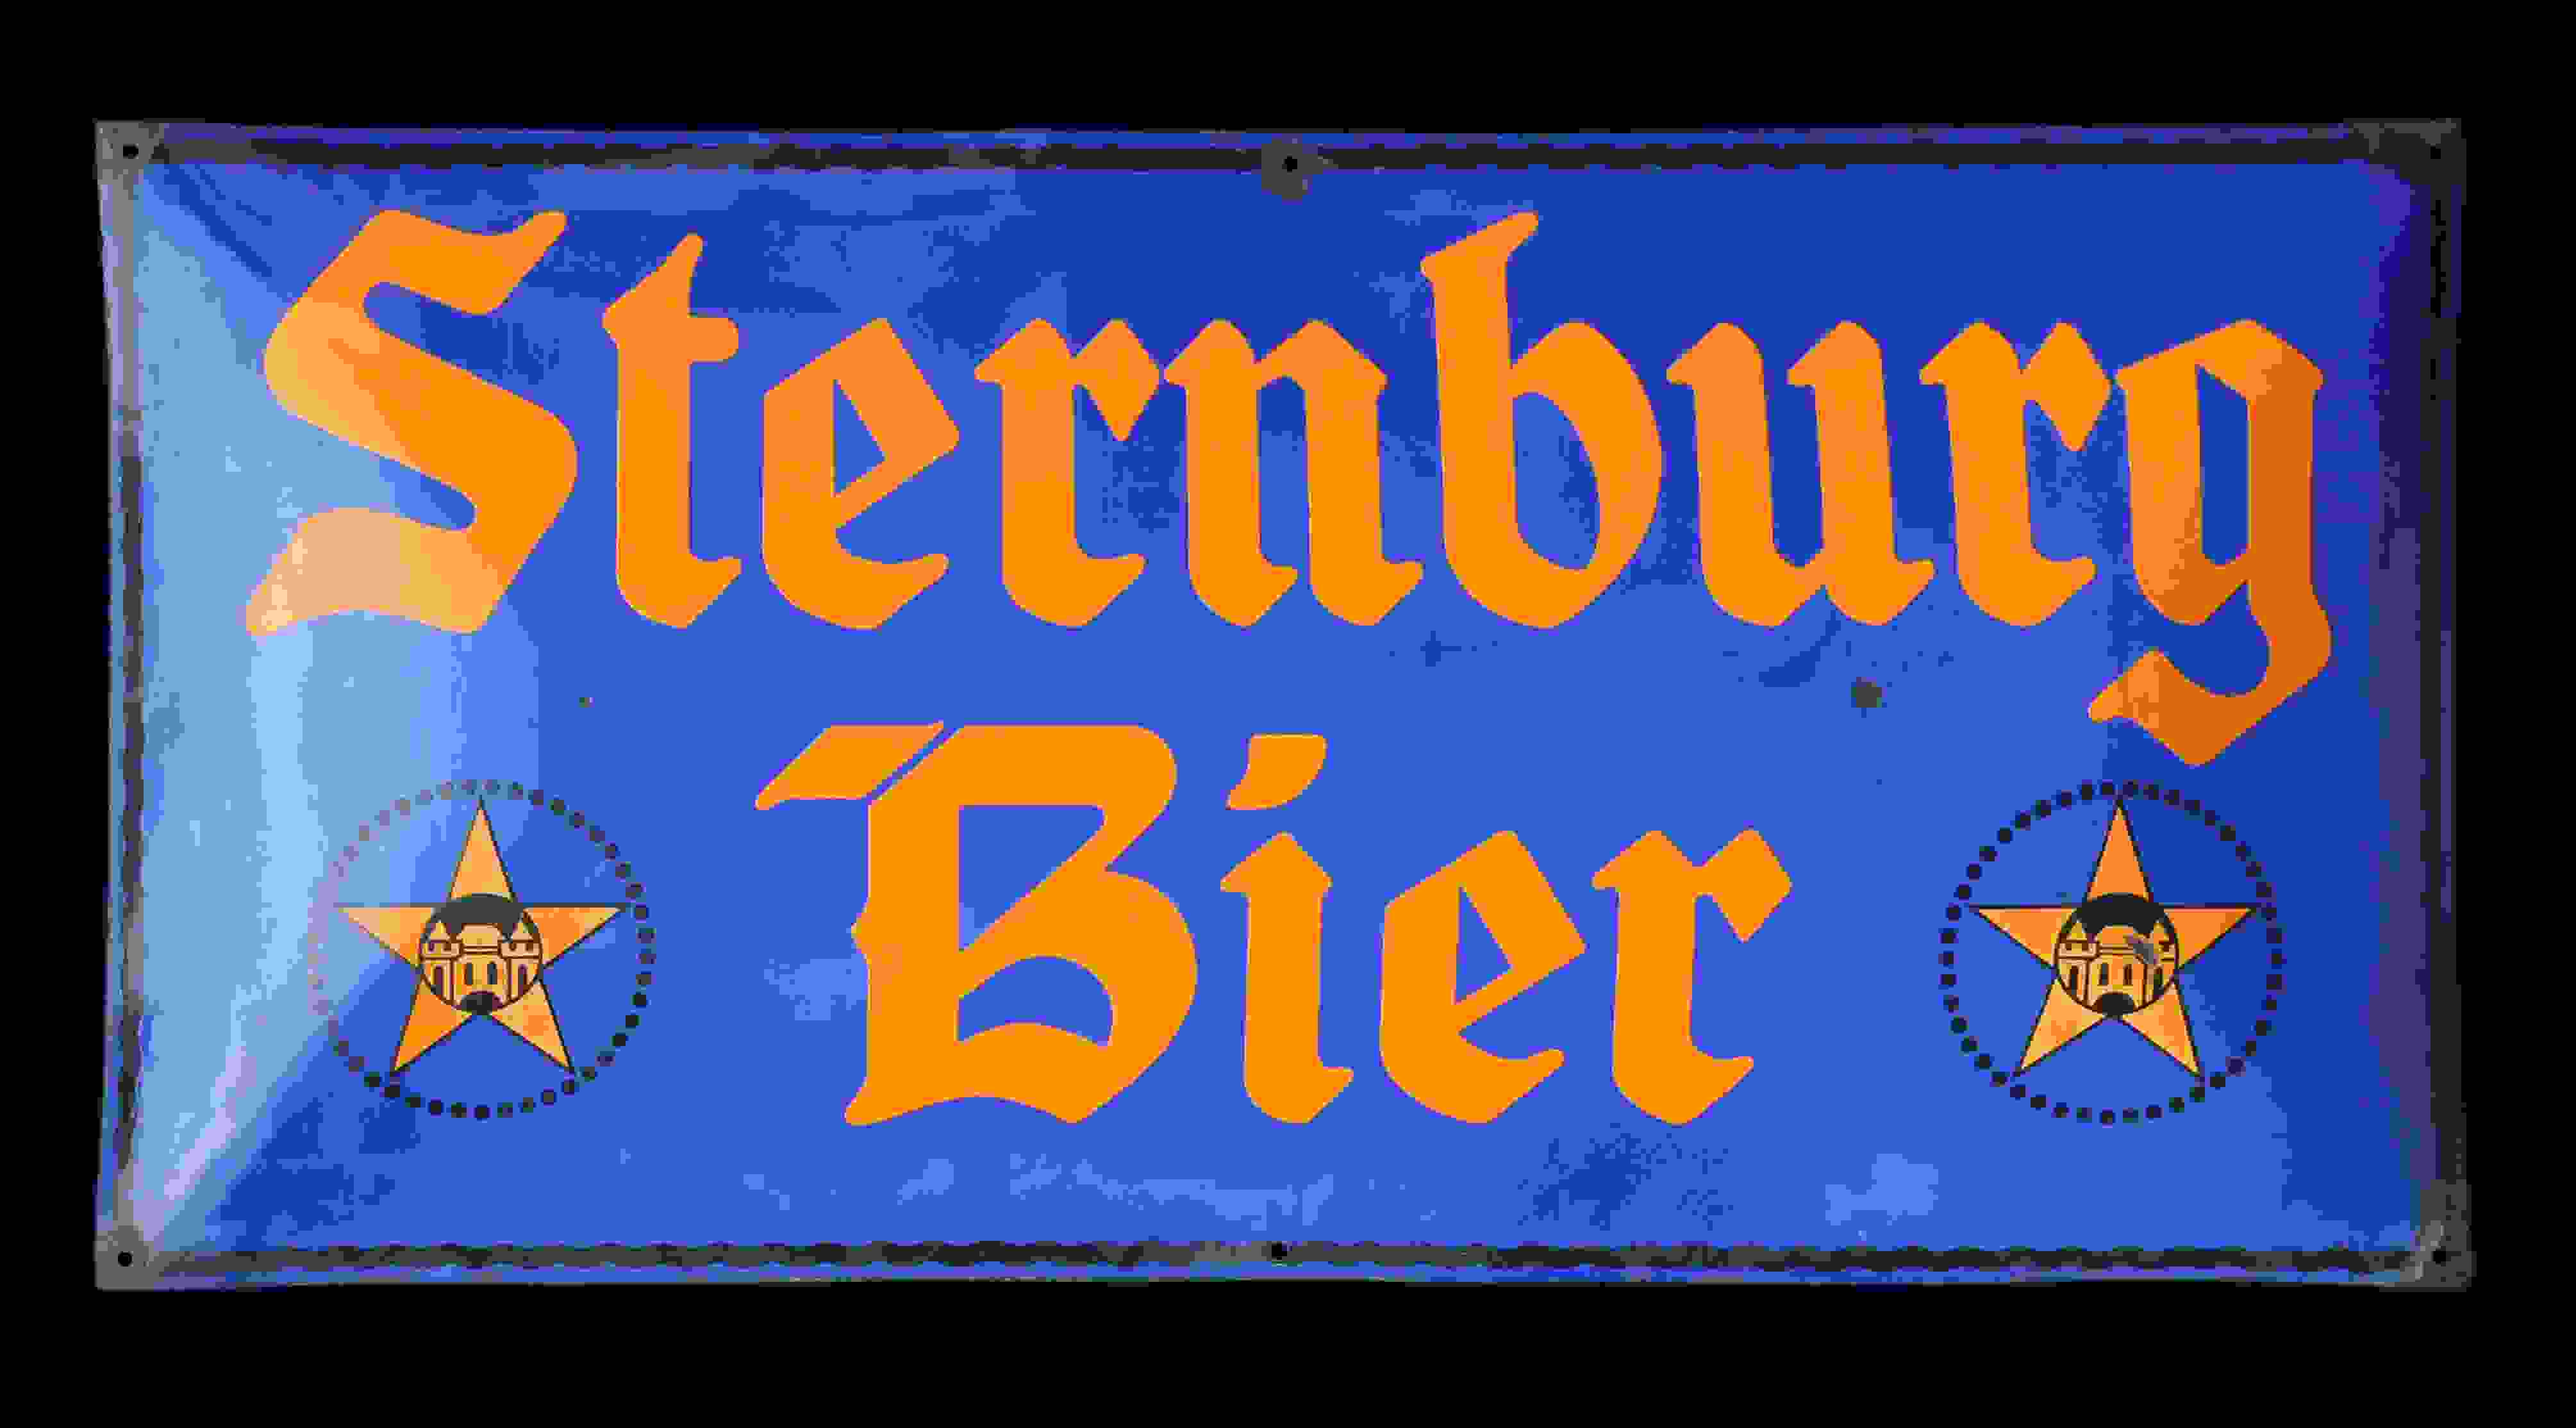 Sternburg Bier 